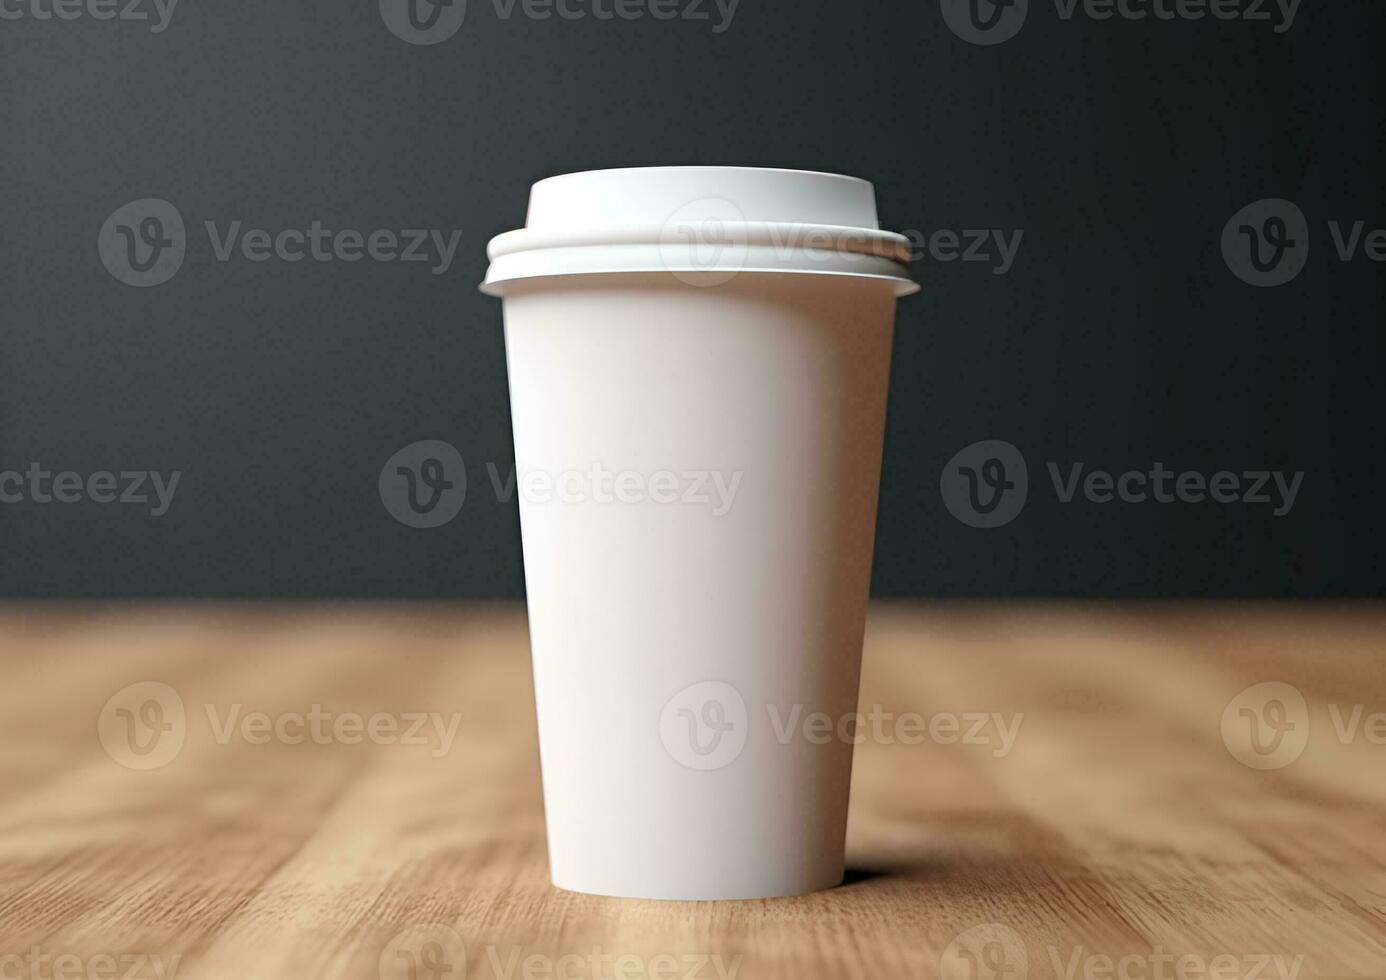 kaffe papper kopp attrapp - tom kaffe råna falsk upp omslag foto